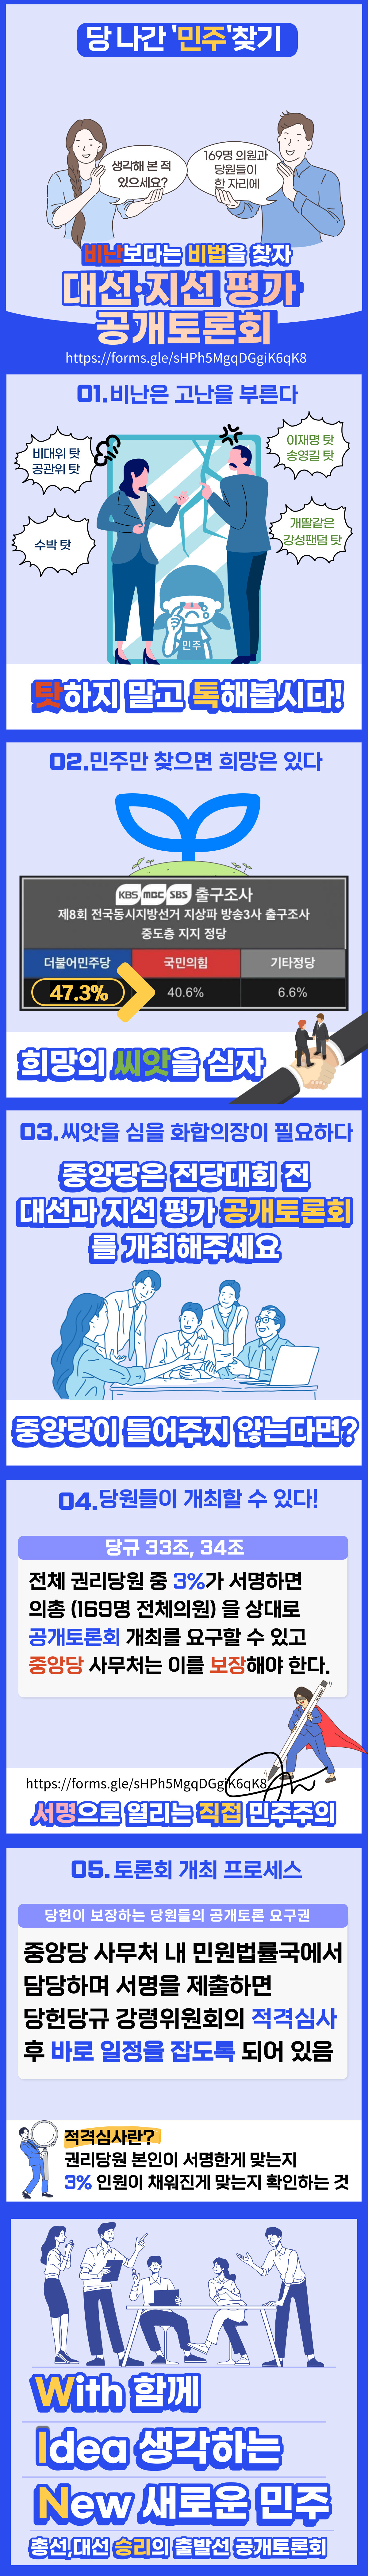 토론회카드뉴스_수정.jpg